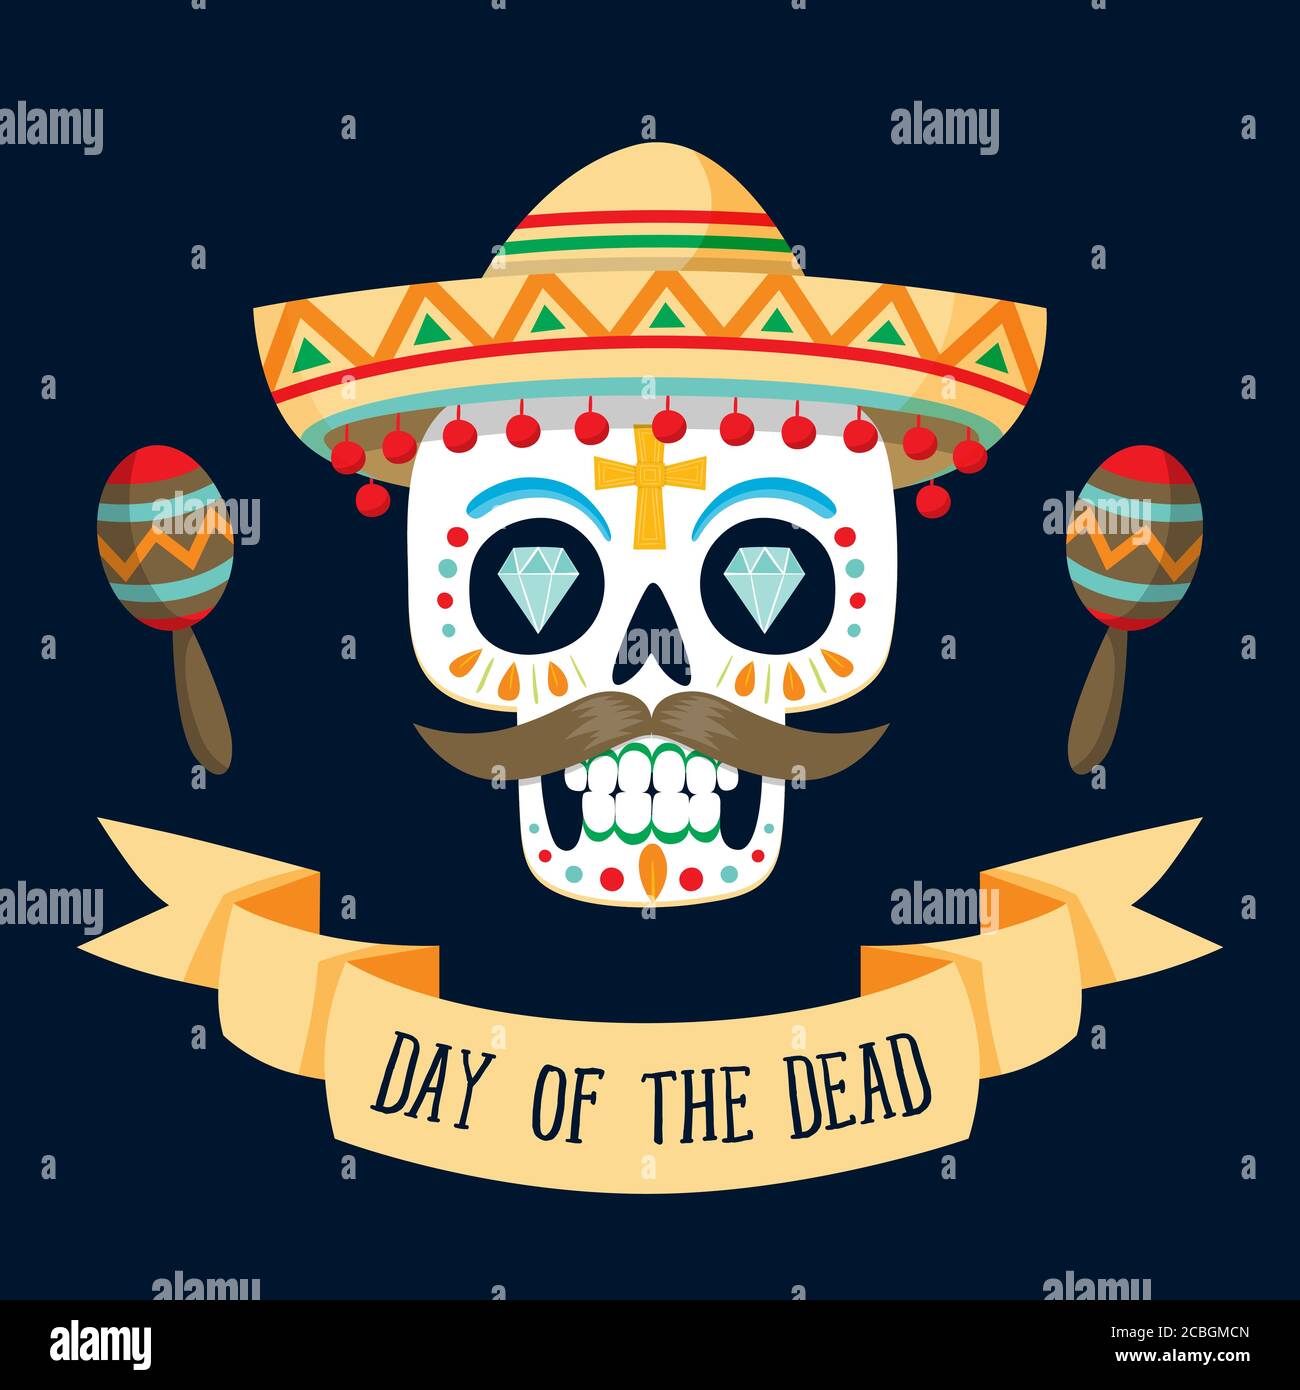 Scheda "Dia de los Muertos" (giorno del morto) con testo in inglese. Cranio di zucchero messicano con un cappello e due maracas. Illustrazione vettoriale. Illustrazione Vettoriale